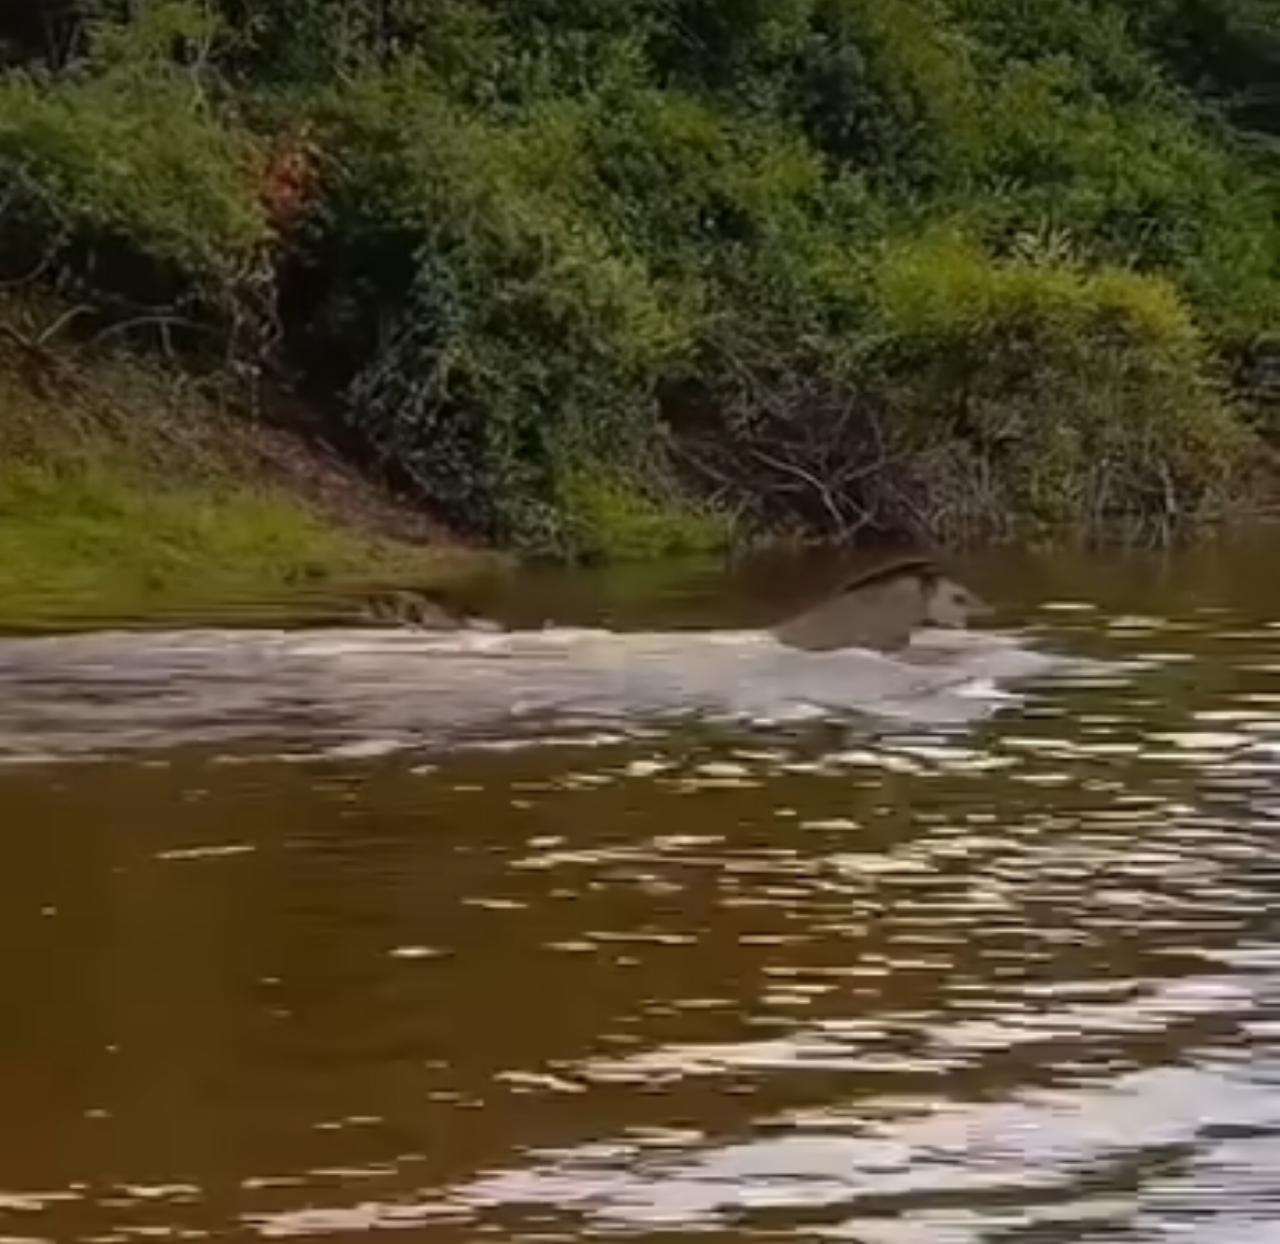 Em meio ao calor intenso, um casal de antas encontra refúgio e alegria nas águas de um rio, encantando internautas com sua vivacidade.